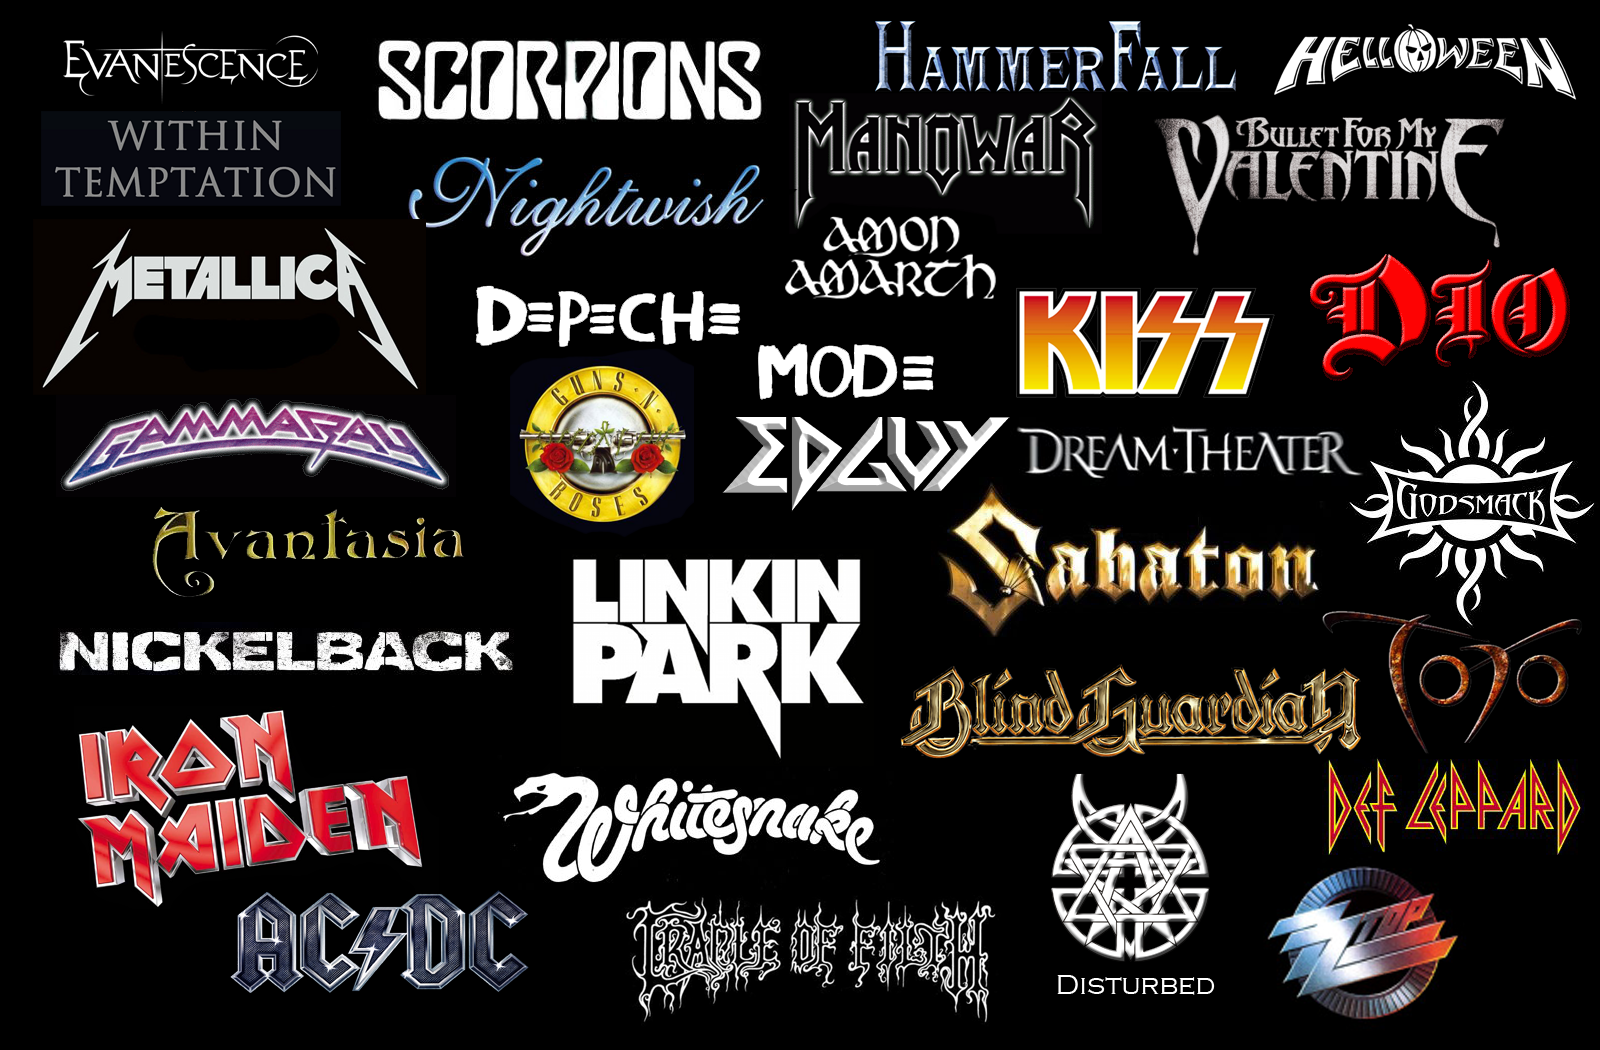 Название групп играющих. Логотипы групп. Названия рок групп. Названия металл групп. Эмблемы рок групп.